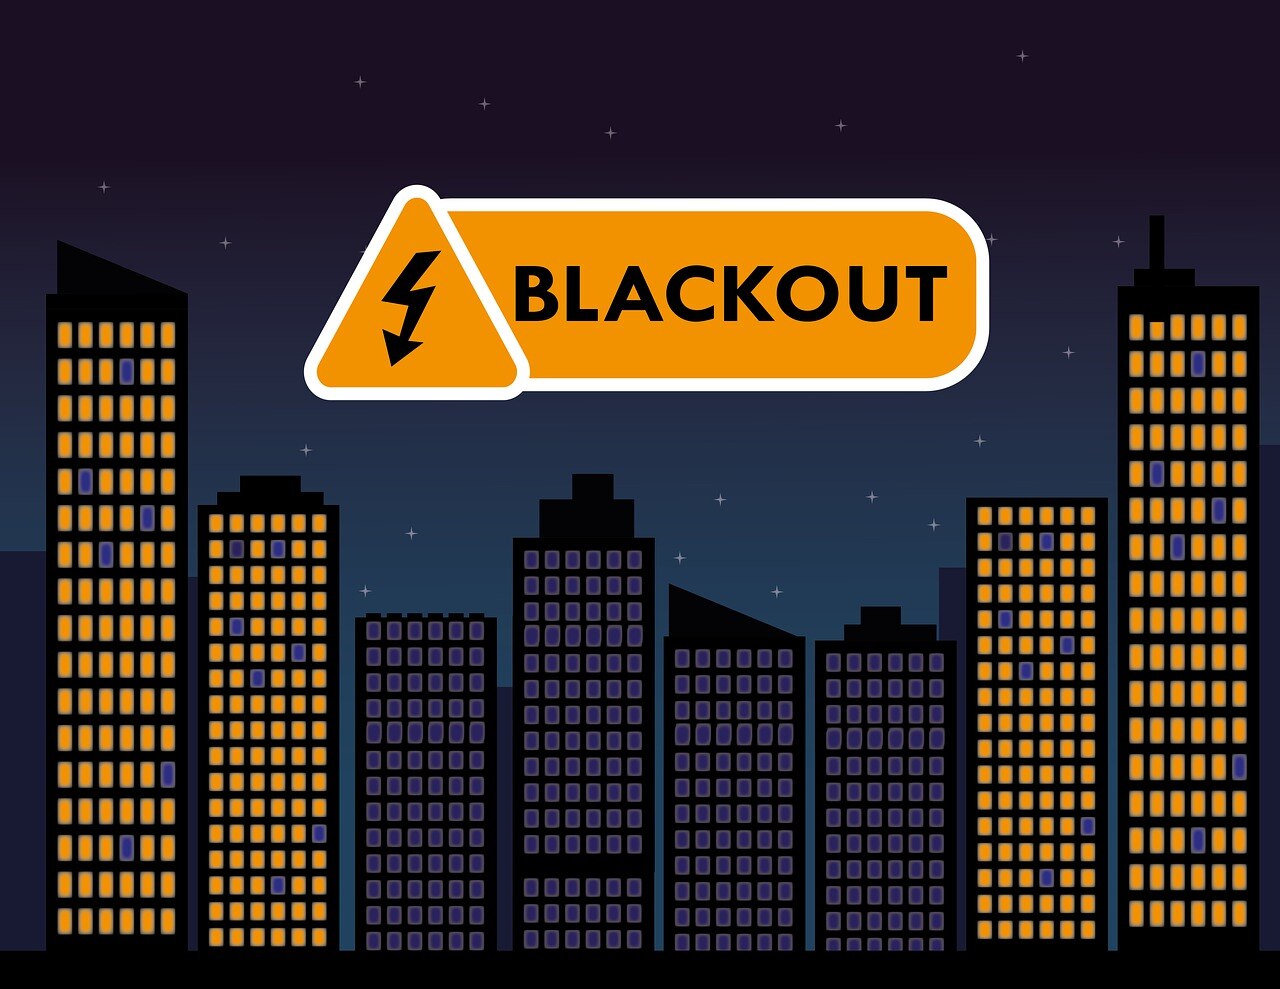 Piktogramm von Hochhäusern, die mittleren Häuser ohne Licht in den Fenstern, Aufschrift: Blackout